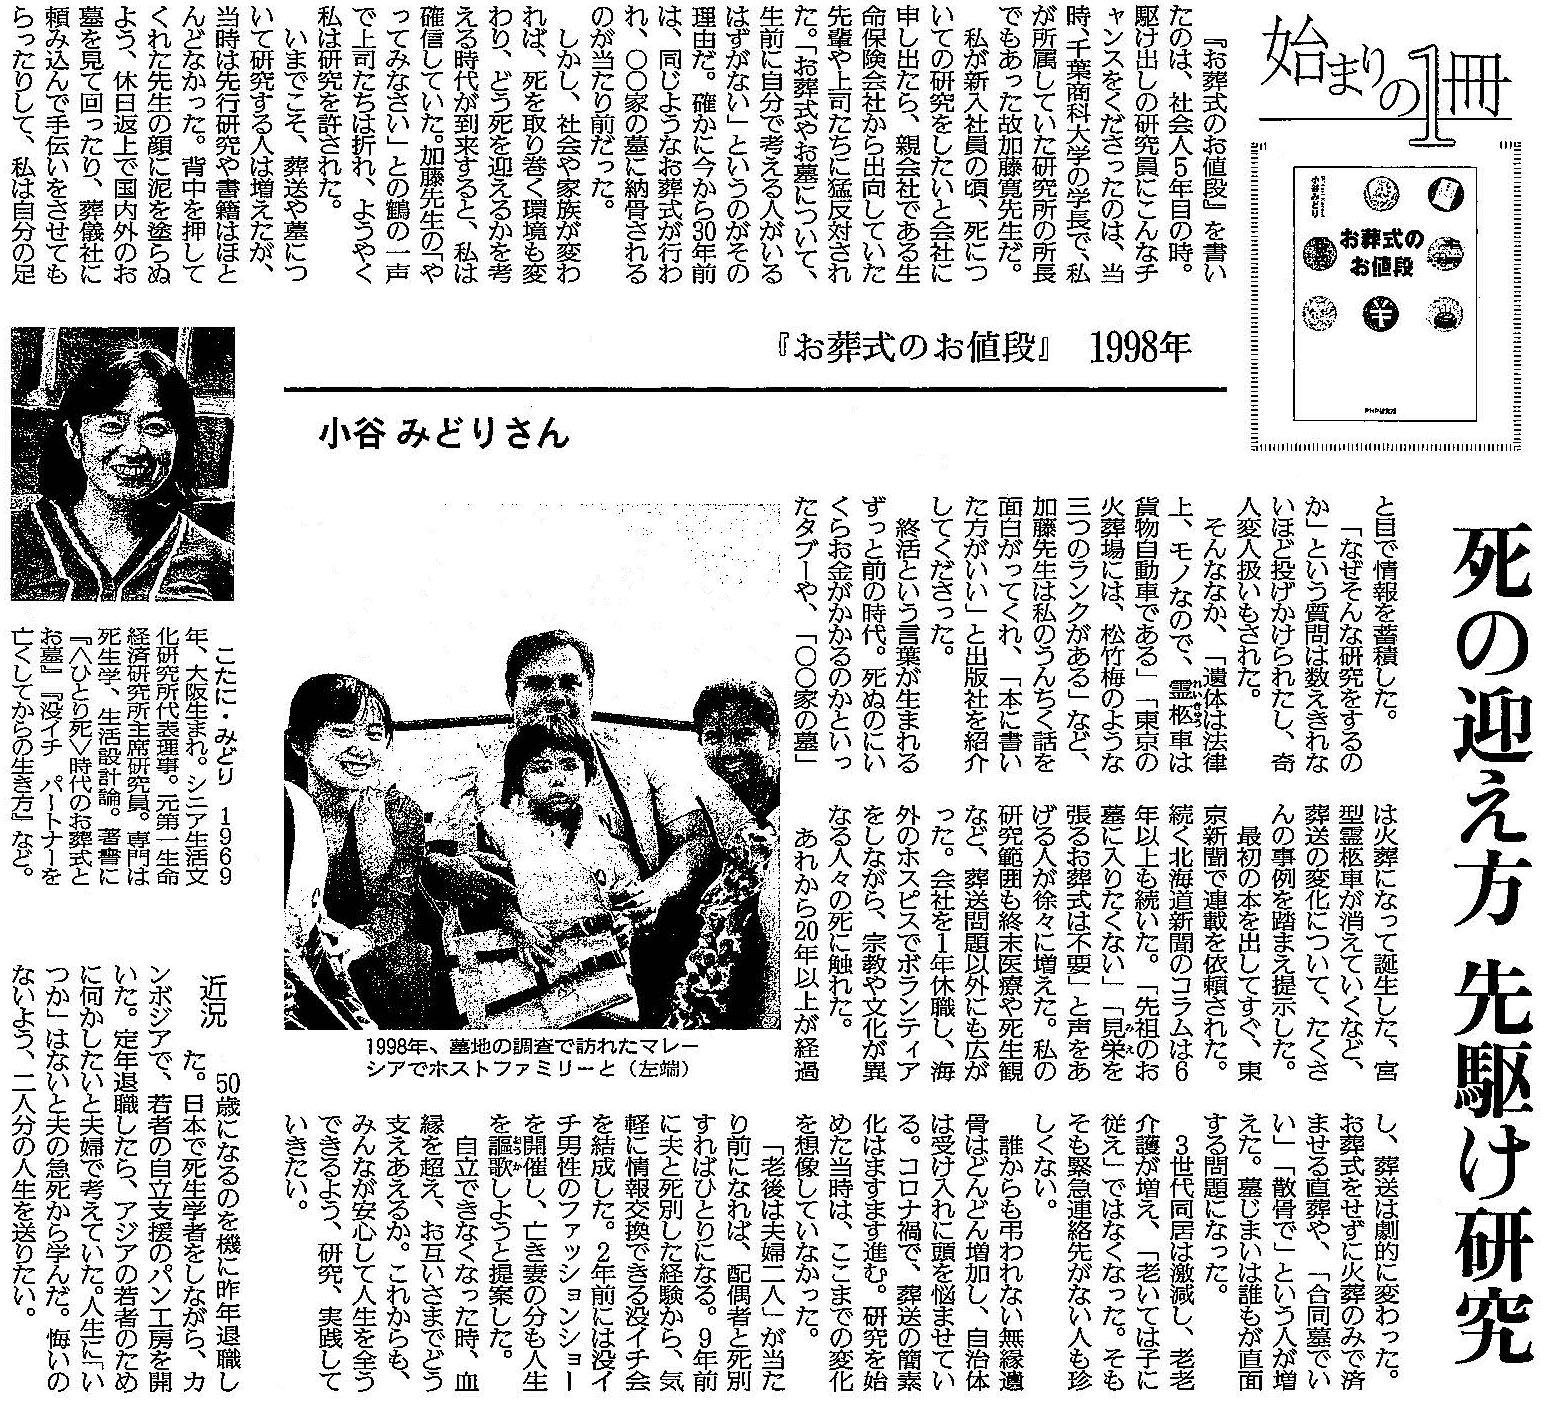 読売新聞 2020年11月15日掲載記事